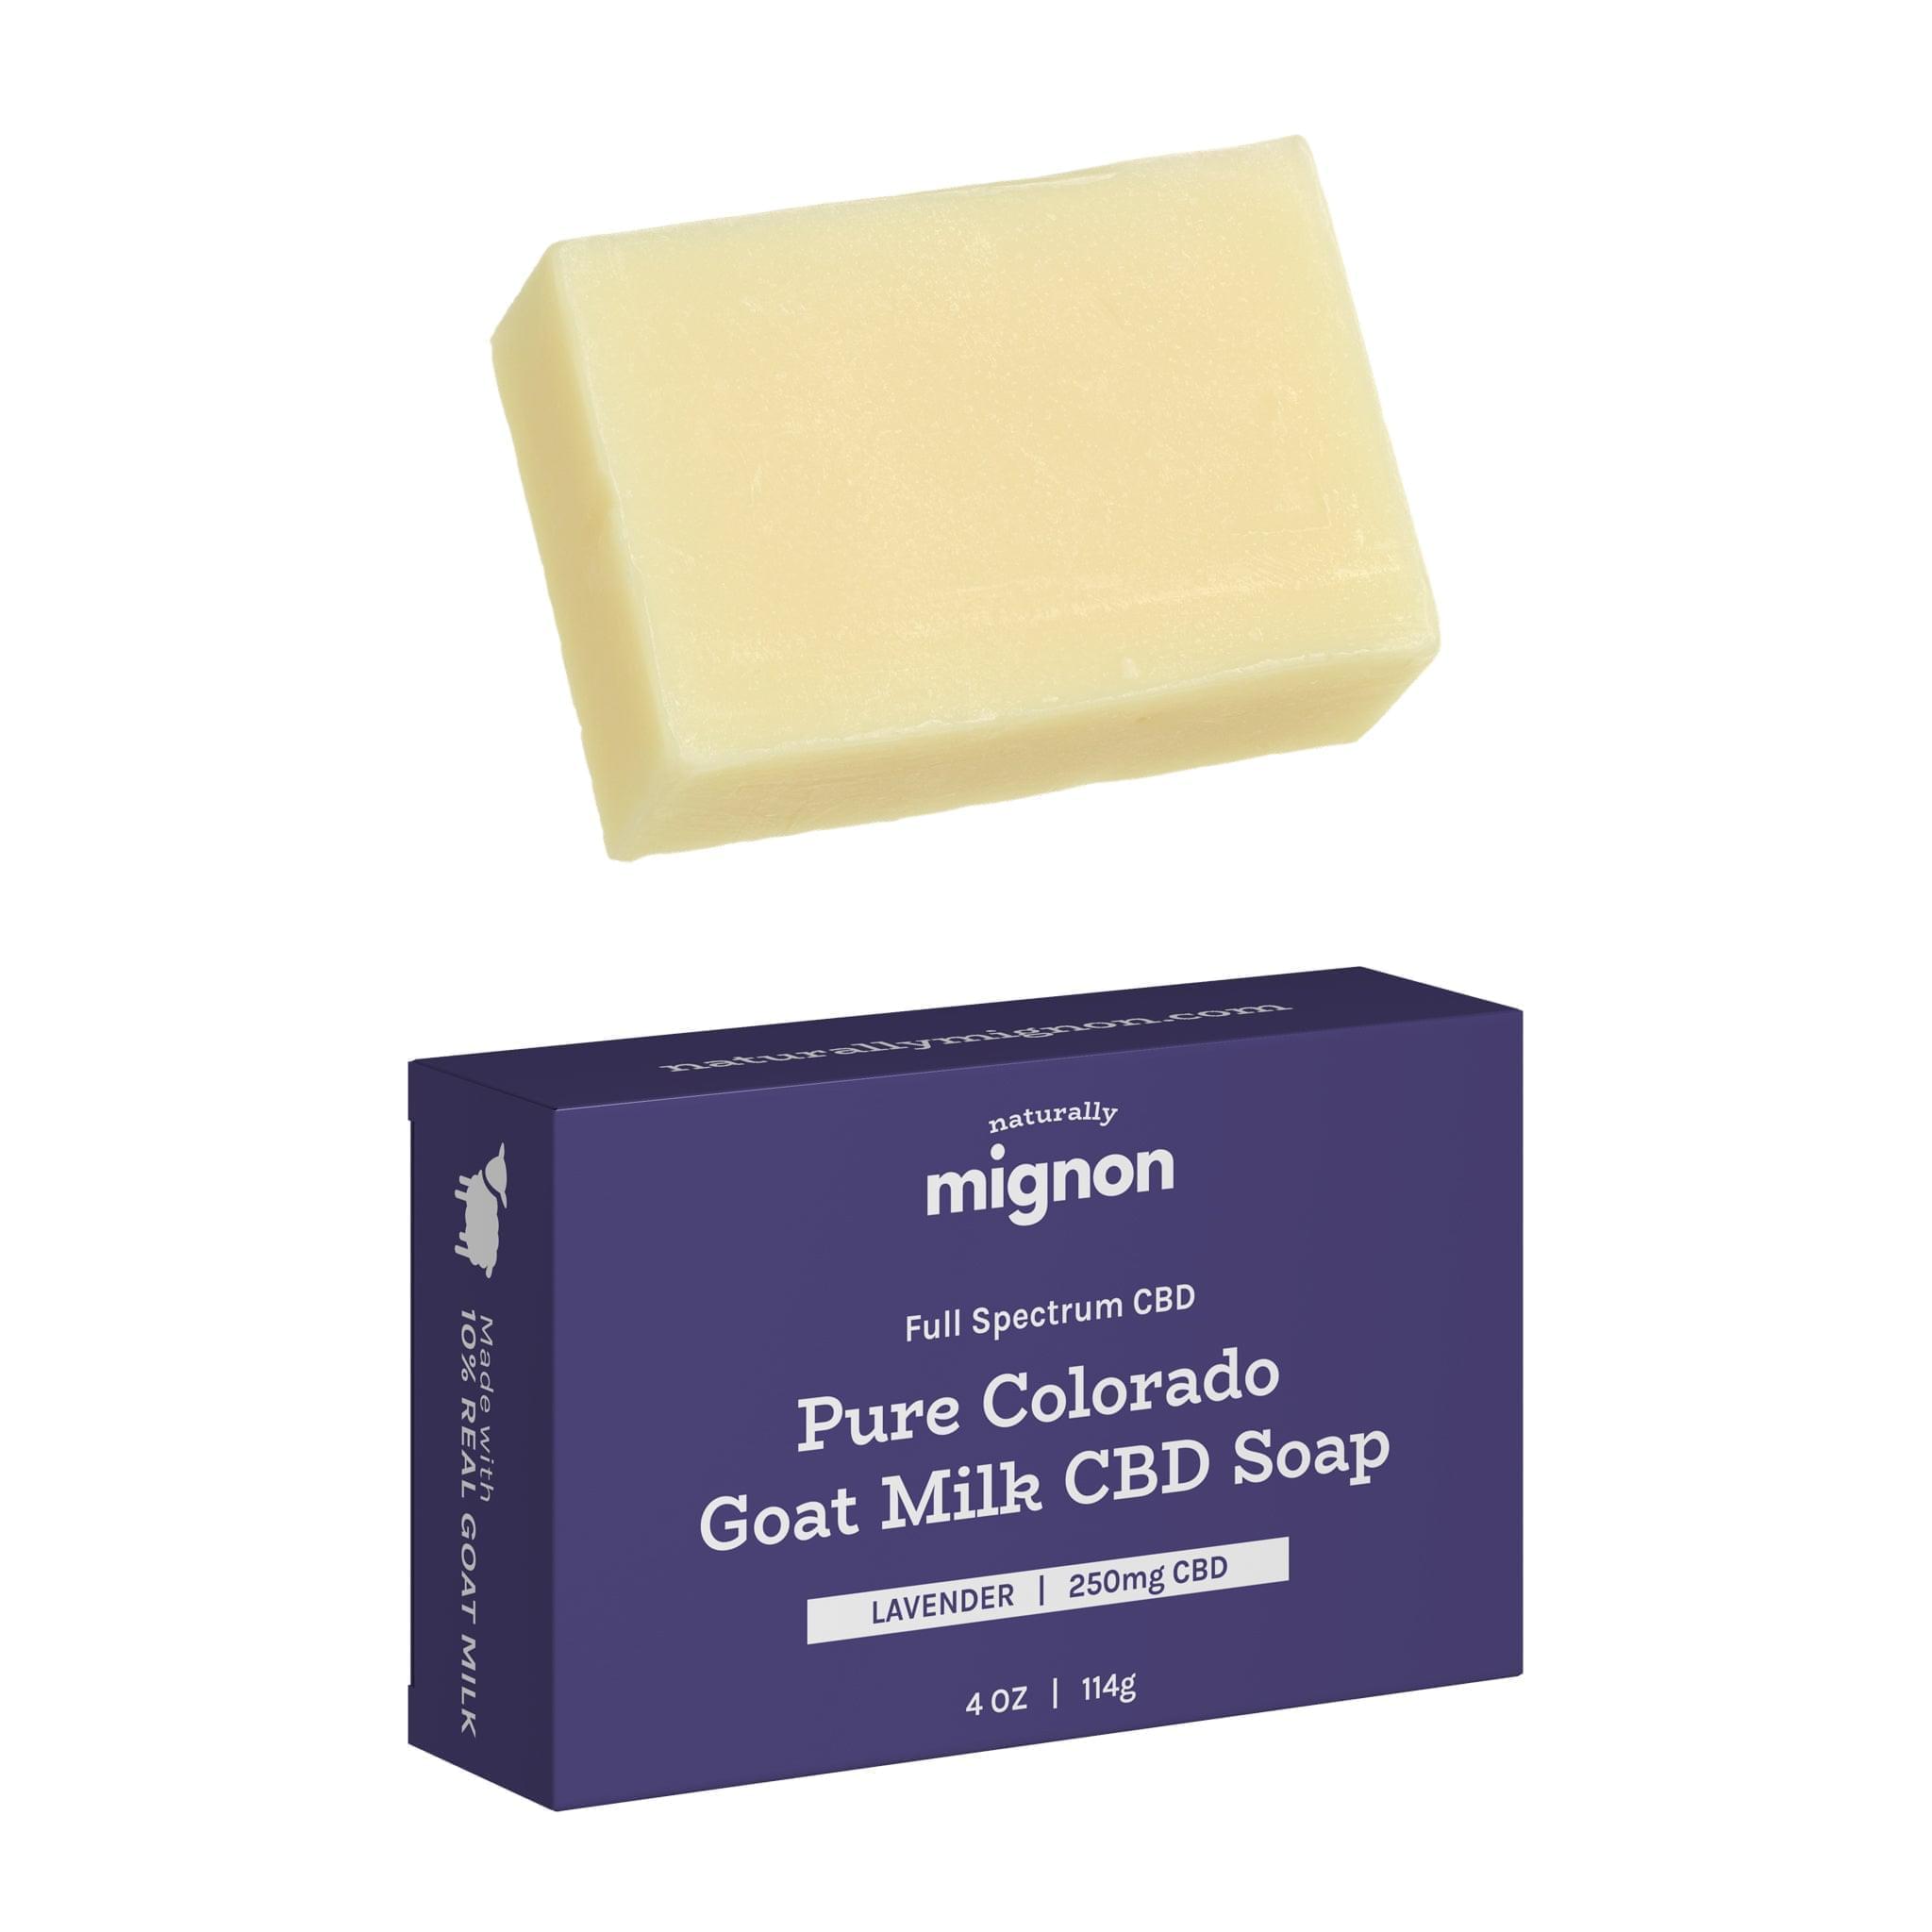 Pure Colorado CBD Bar Soap - Naturally Mignon CBD